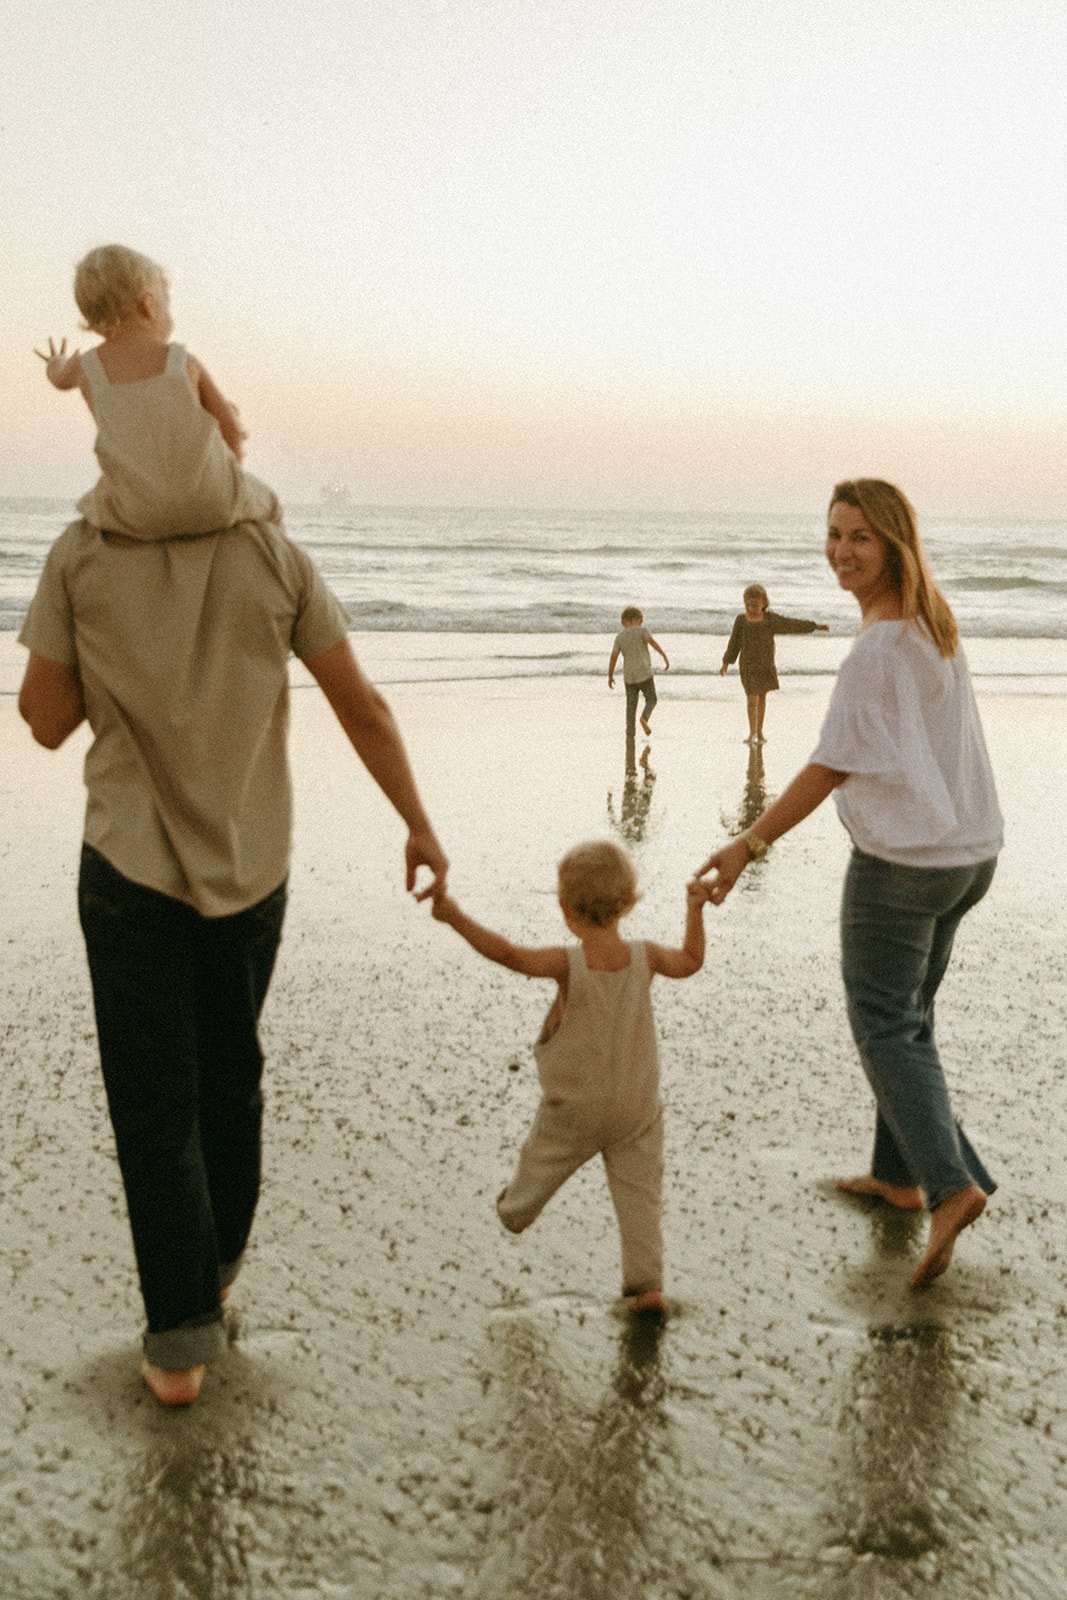 Documentary style family photoshoot on a beach